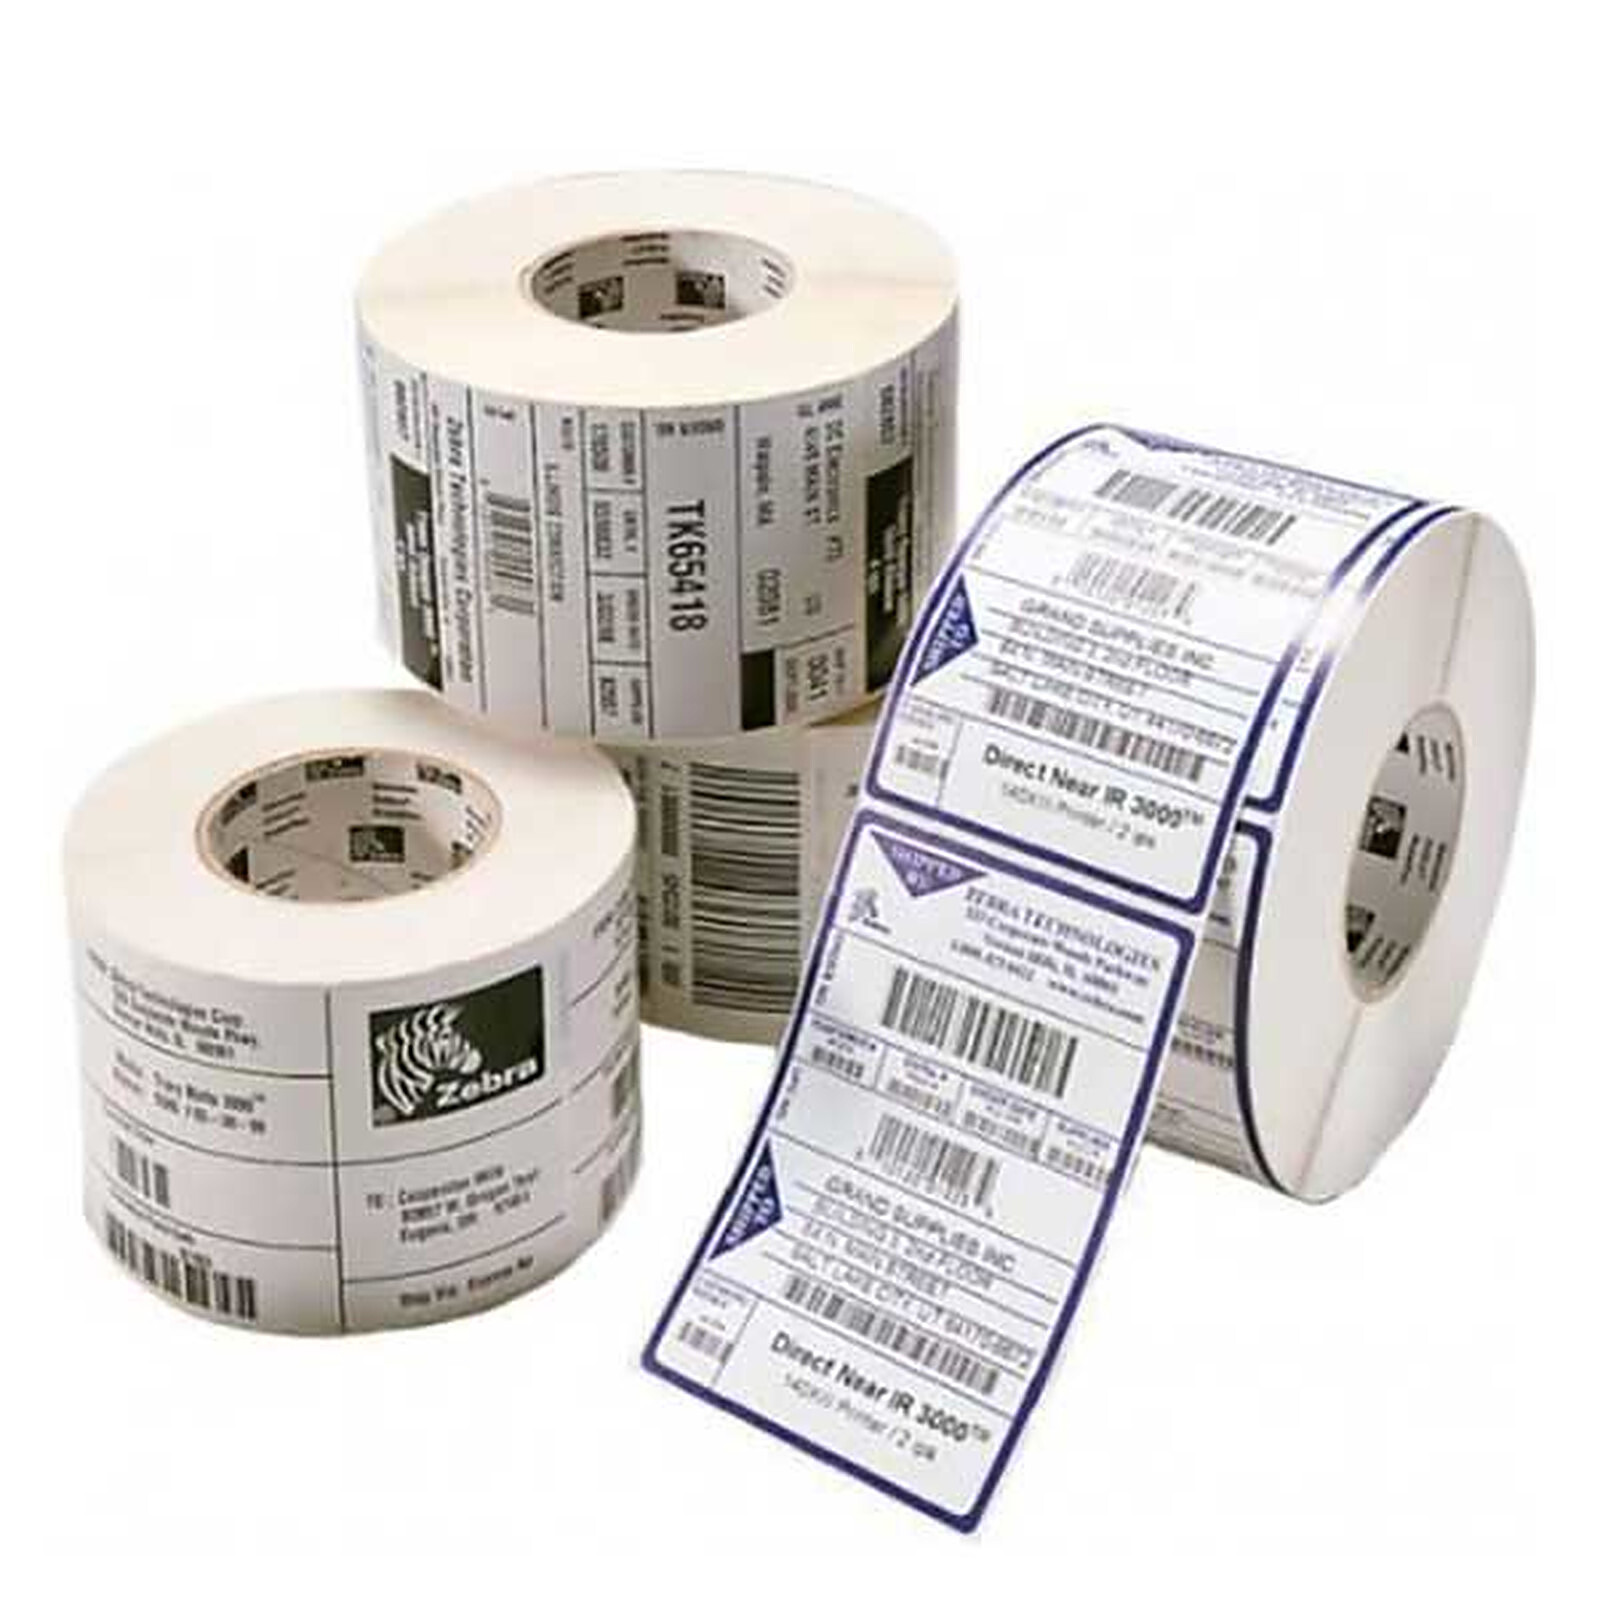 Rouleaux Etiquettes Thermiques EPSON : rouleaux d'étiquettes EPSON